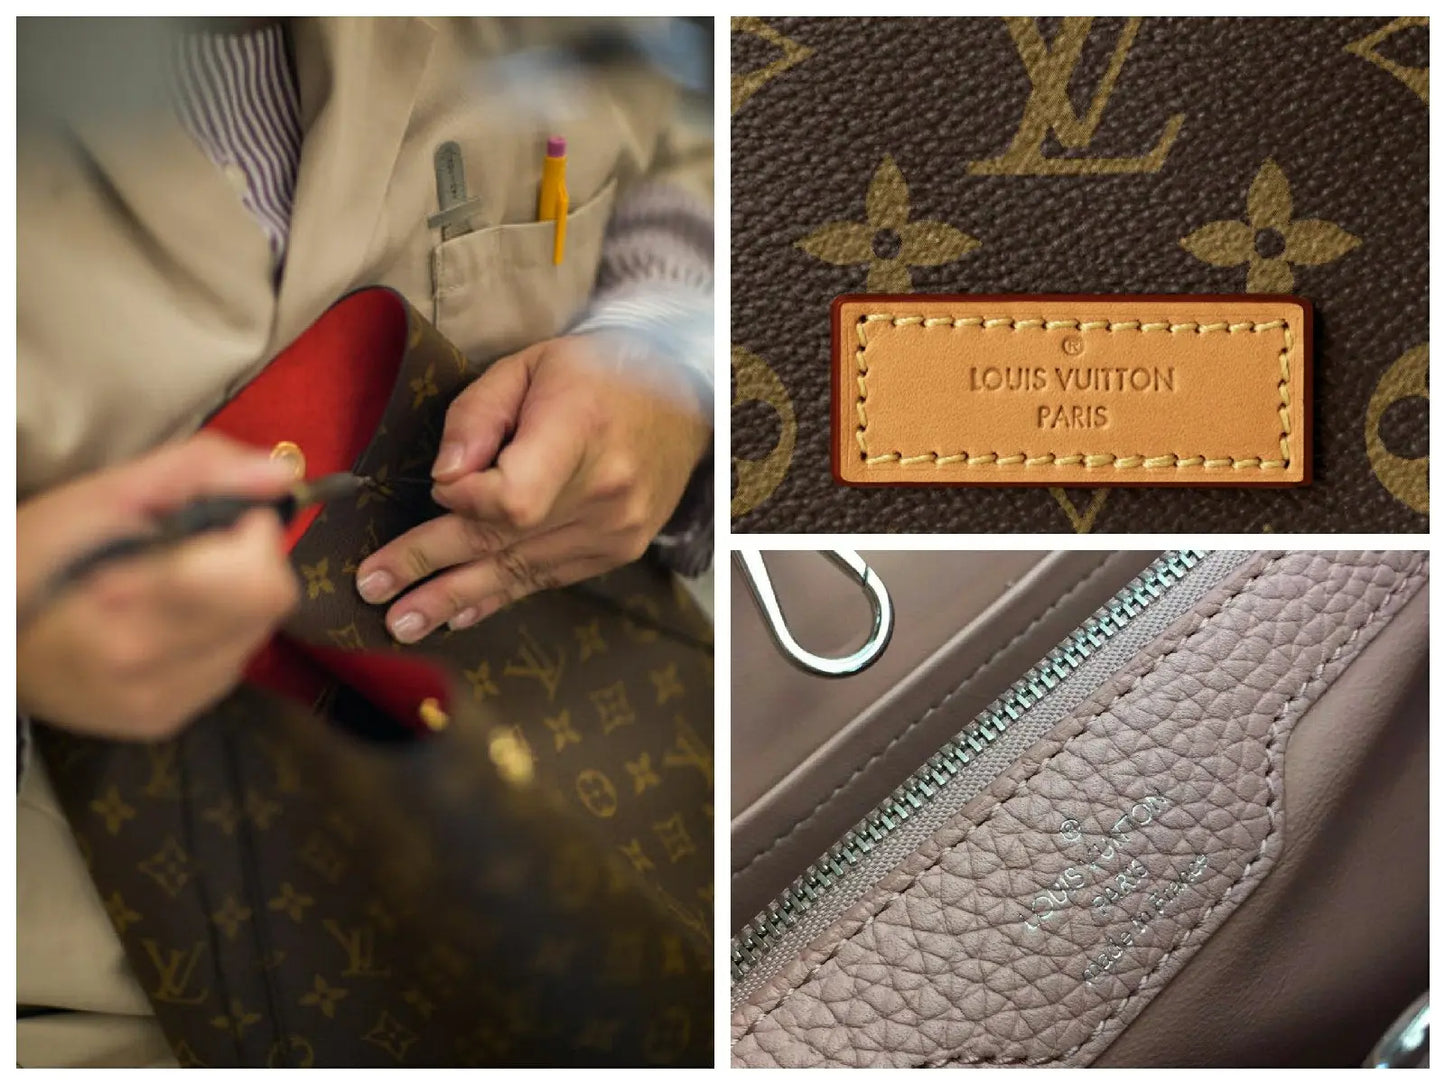 Bolso Louis Vuitton para mujer  Comprar o Vender tus Bolsos de